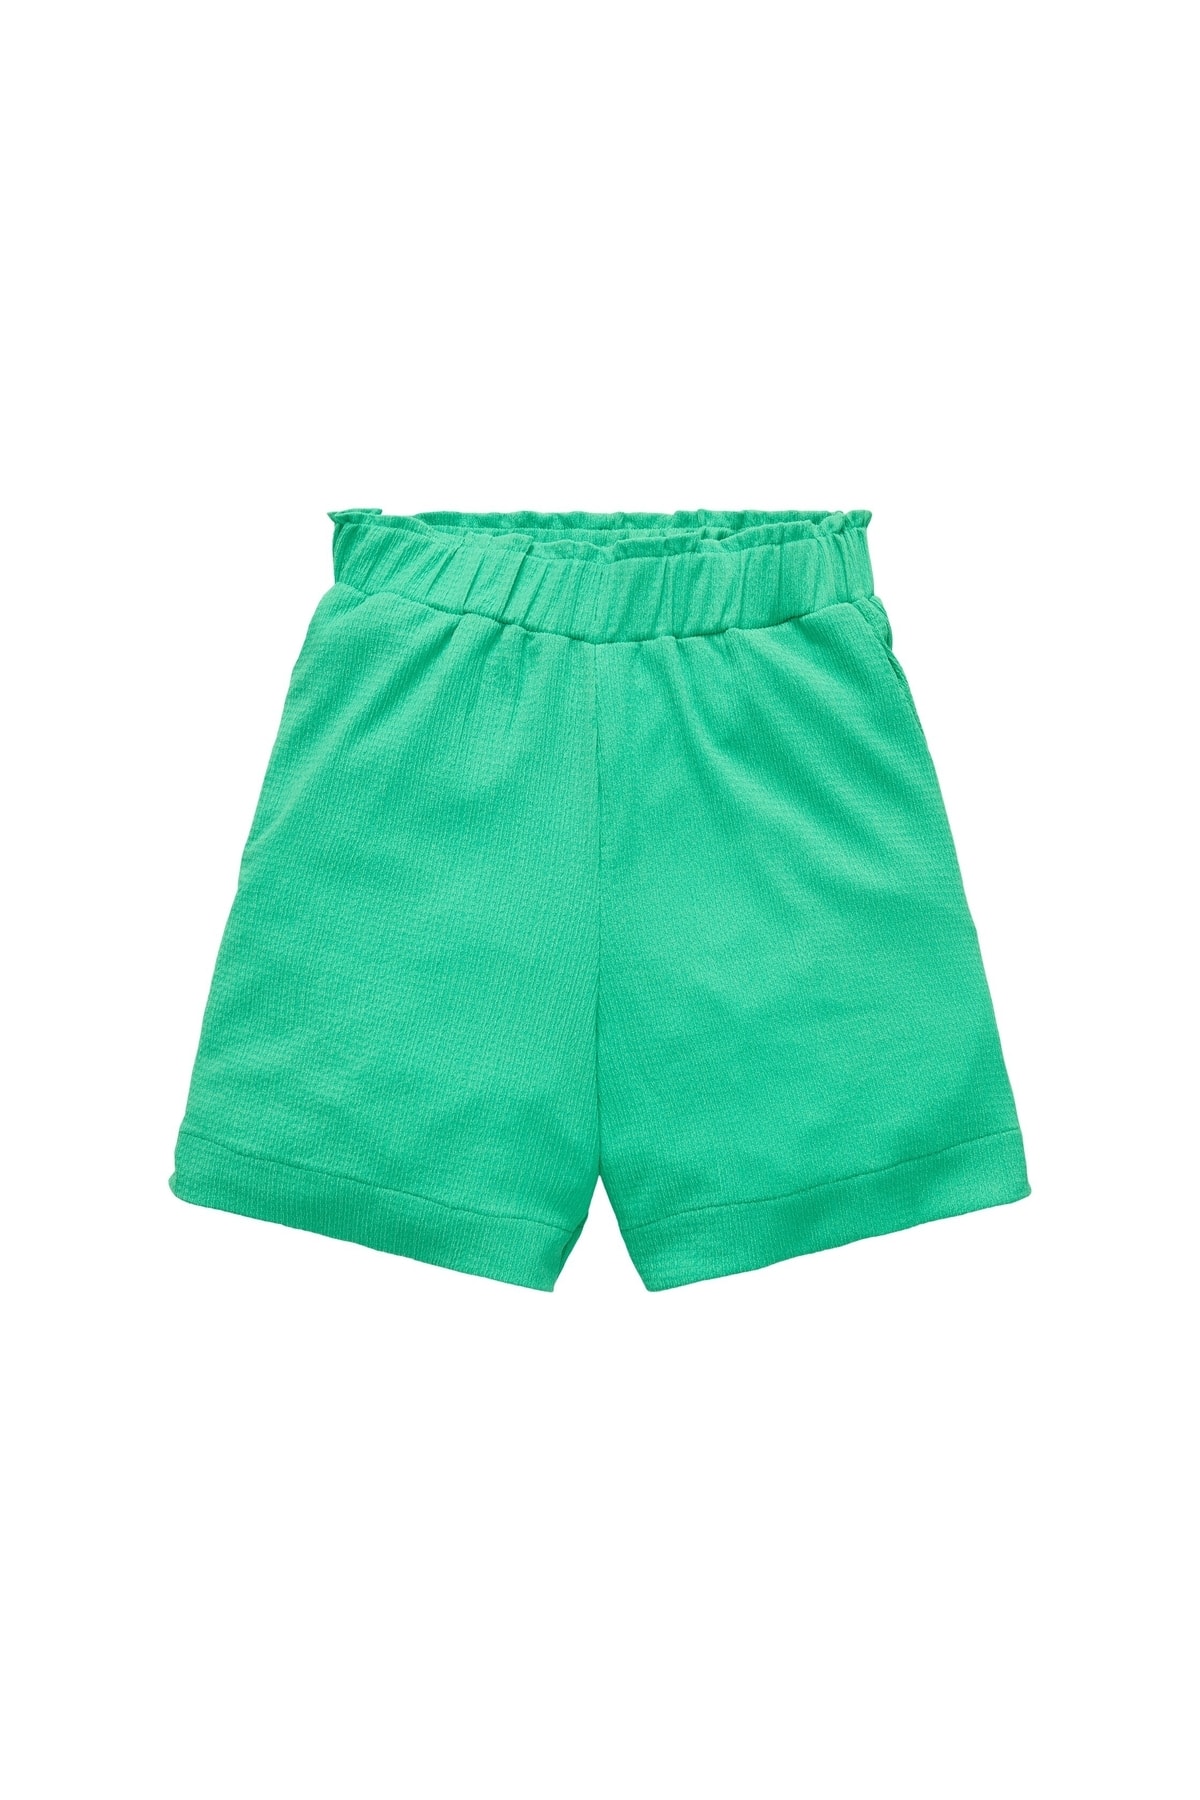 Шорты – зеленые – нормальная талия Tom Tailor, зеленый шорты зеленый высокая талия tom tailor denim